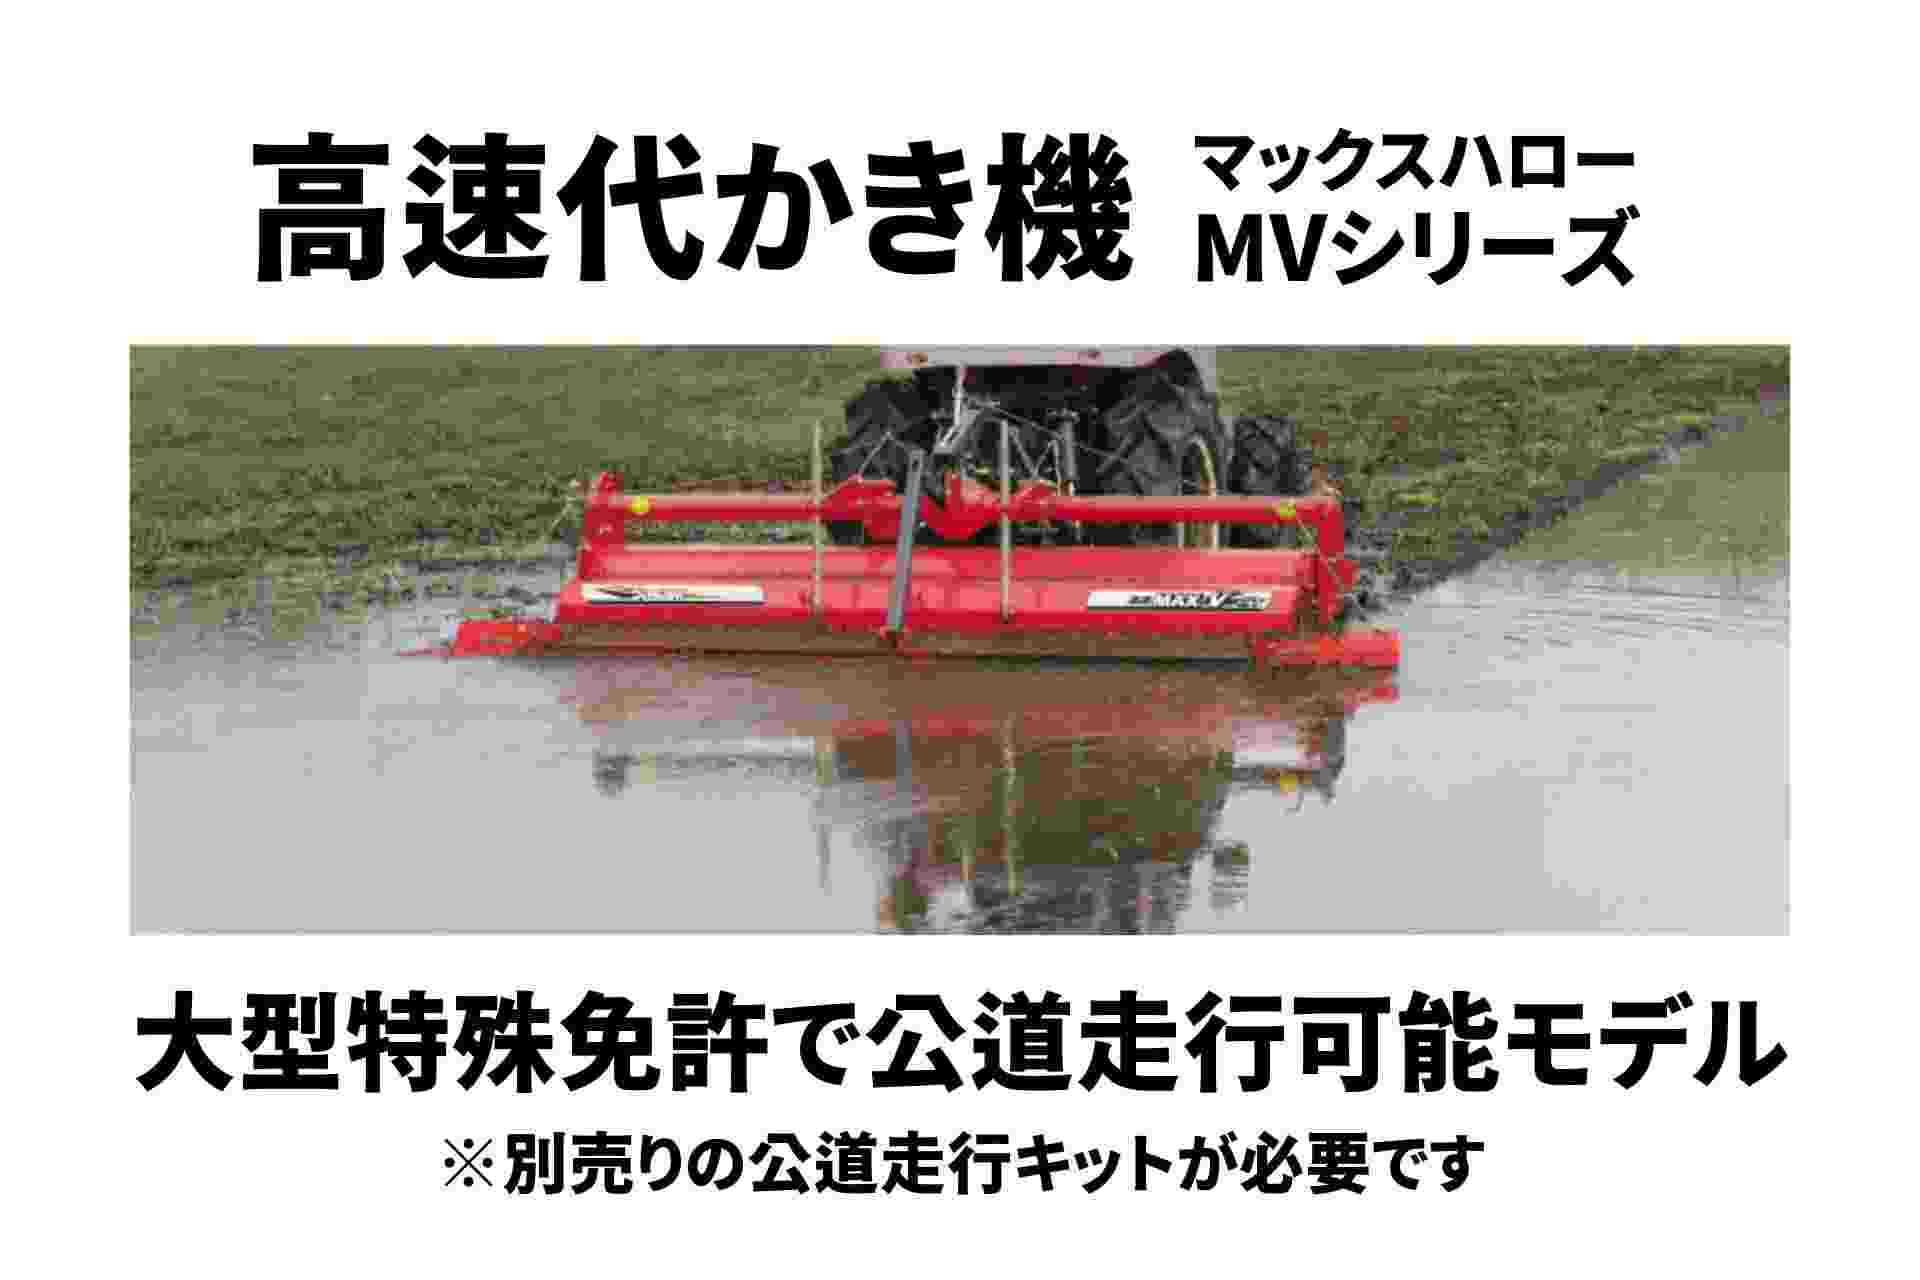 高速代かき機 マックスハロー ドライブハロー ササキ MVシリーズ MV200TL